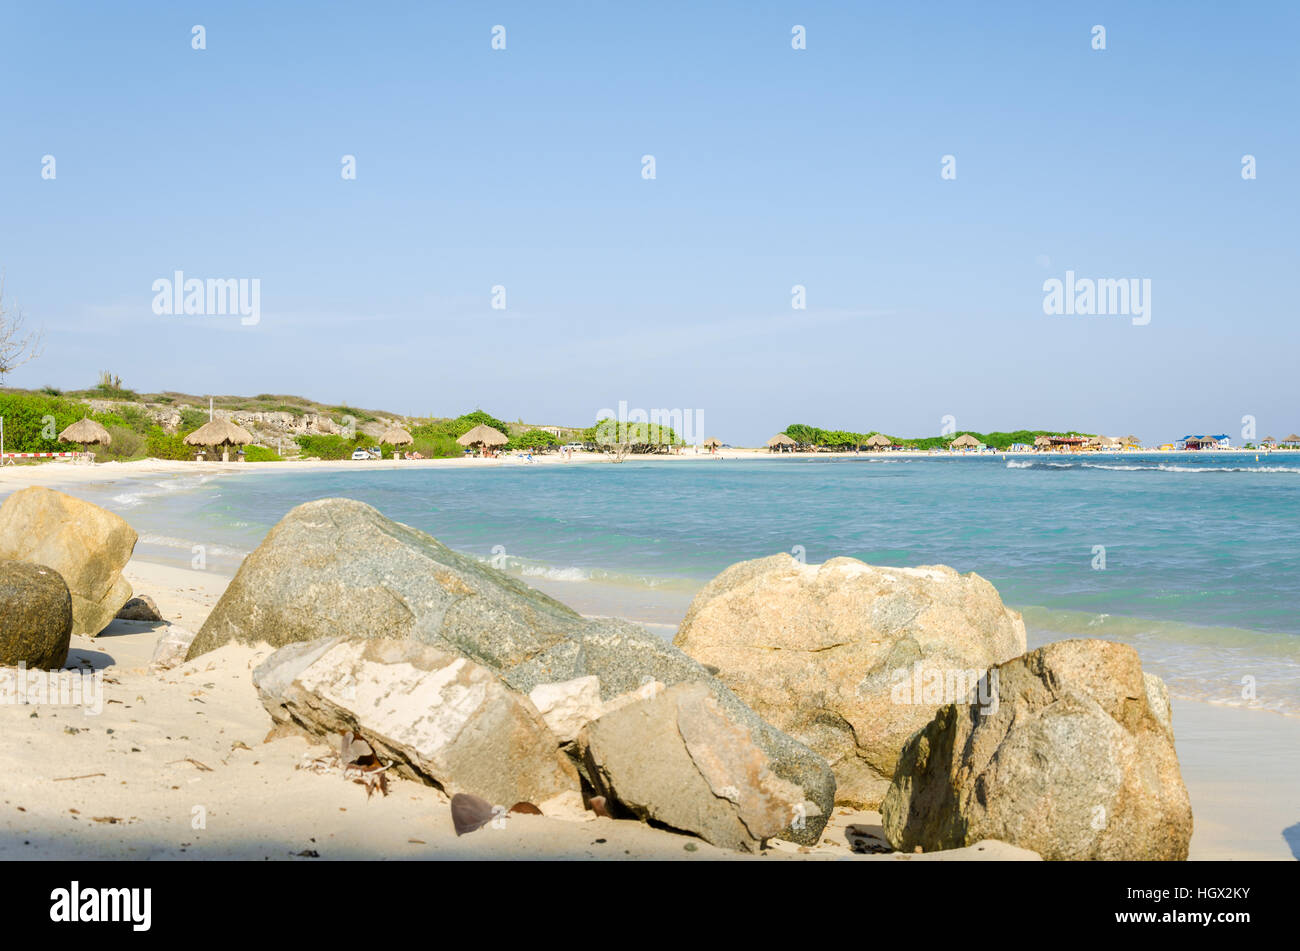 Aruba, dei Caraibi - 26 Settembre 2012: una vista straordinaria dalla baby beach ad Aruba isola del Mar dei Caraibi Foto Stock